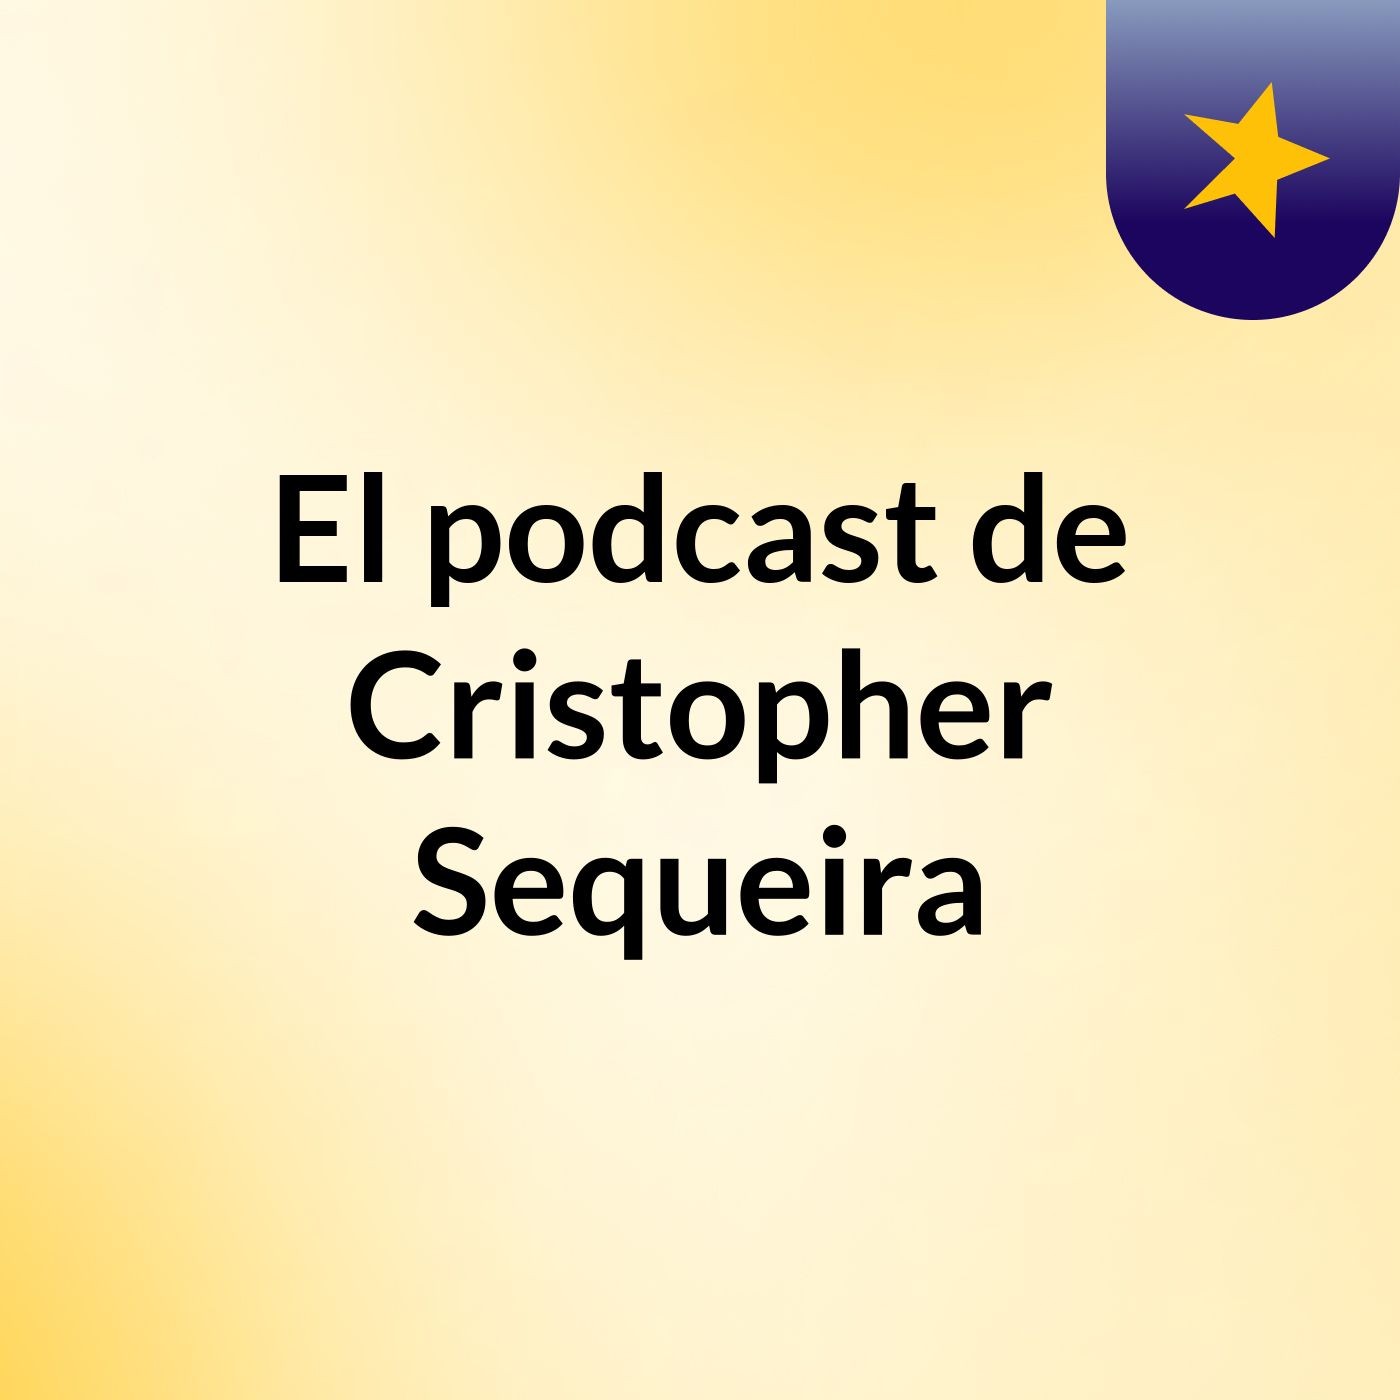 El podcast de Cristopher Sequeira